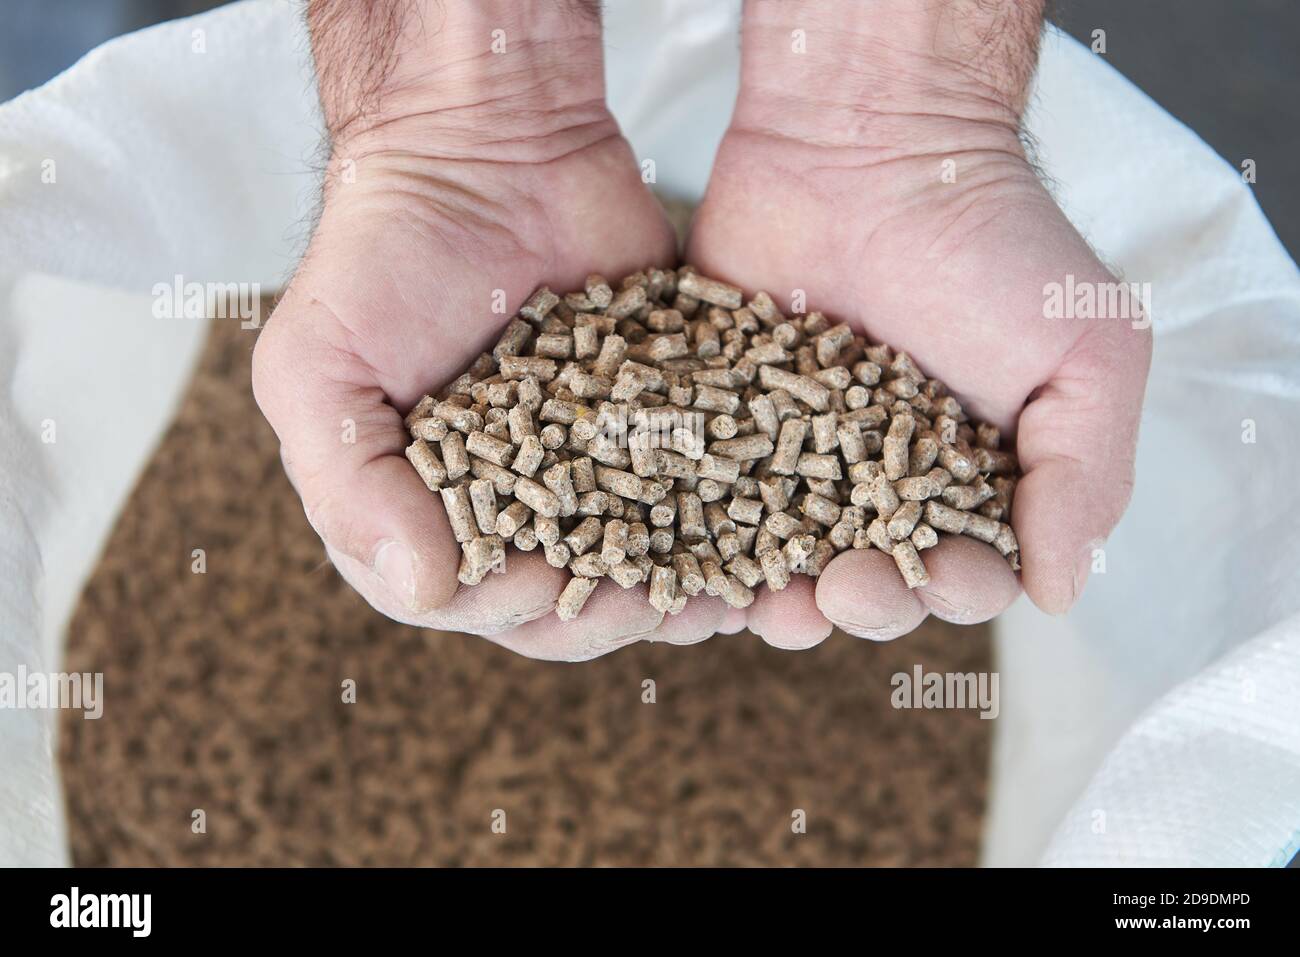 Nourriture sèche en granulés pour animaux dans les mains humaines Banque D'Images